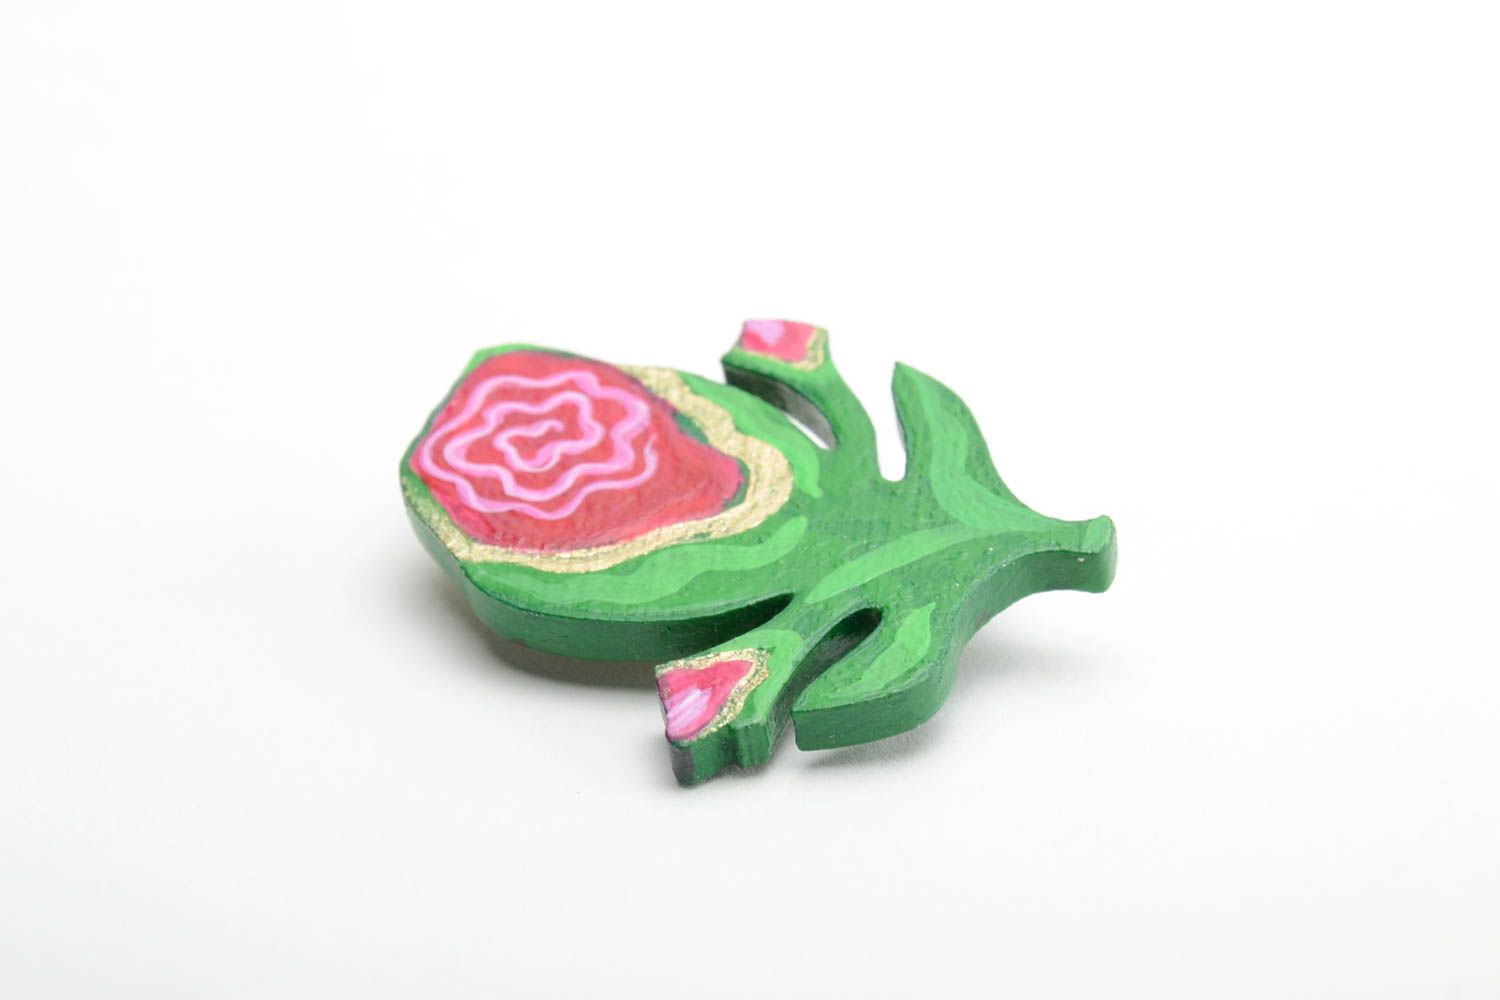 Handmade künstlerische Brosche Blume aus Holz mit Acrylfarben bemalt bunt schön foto 4